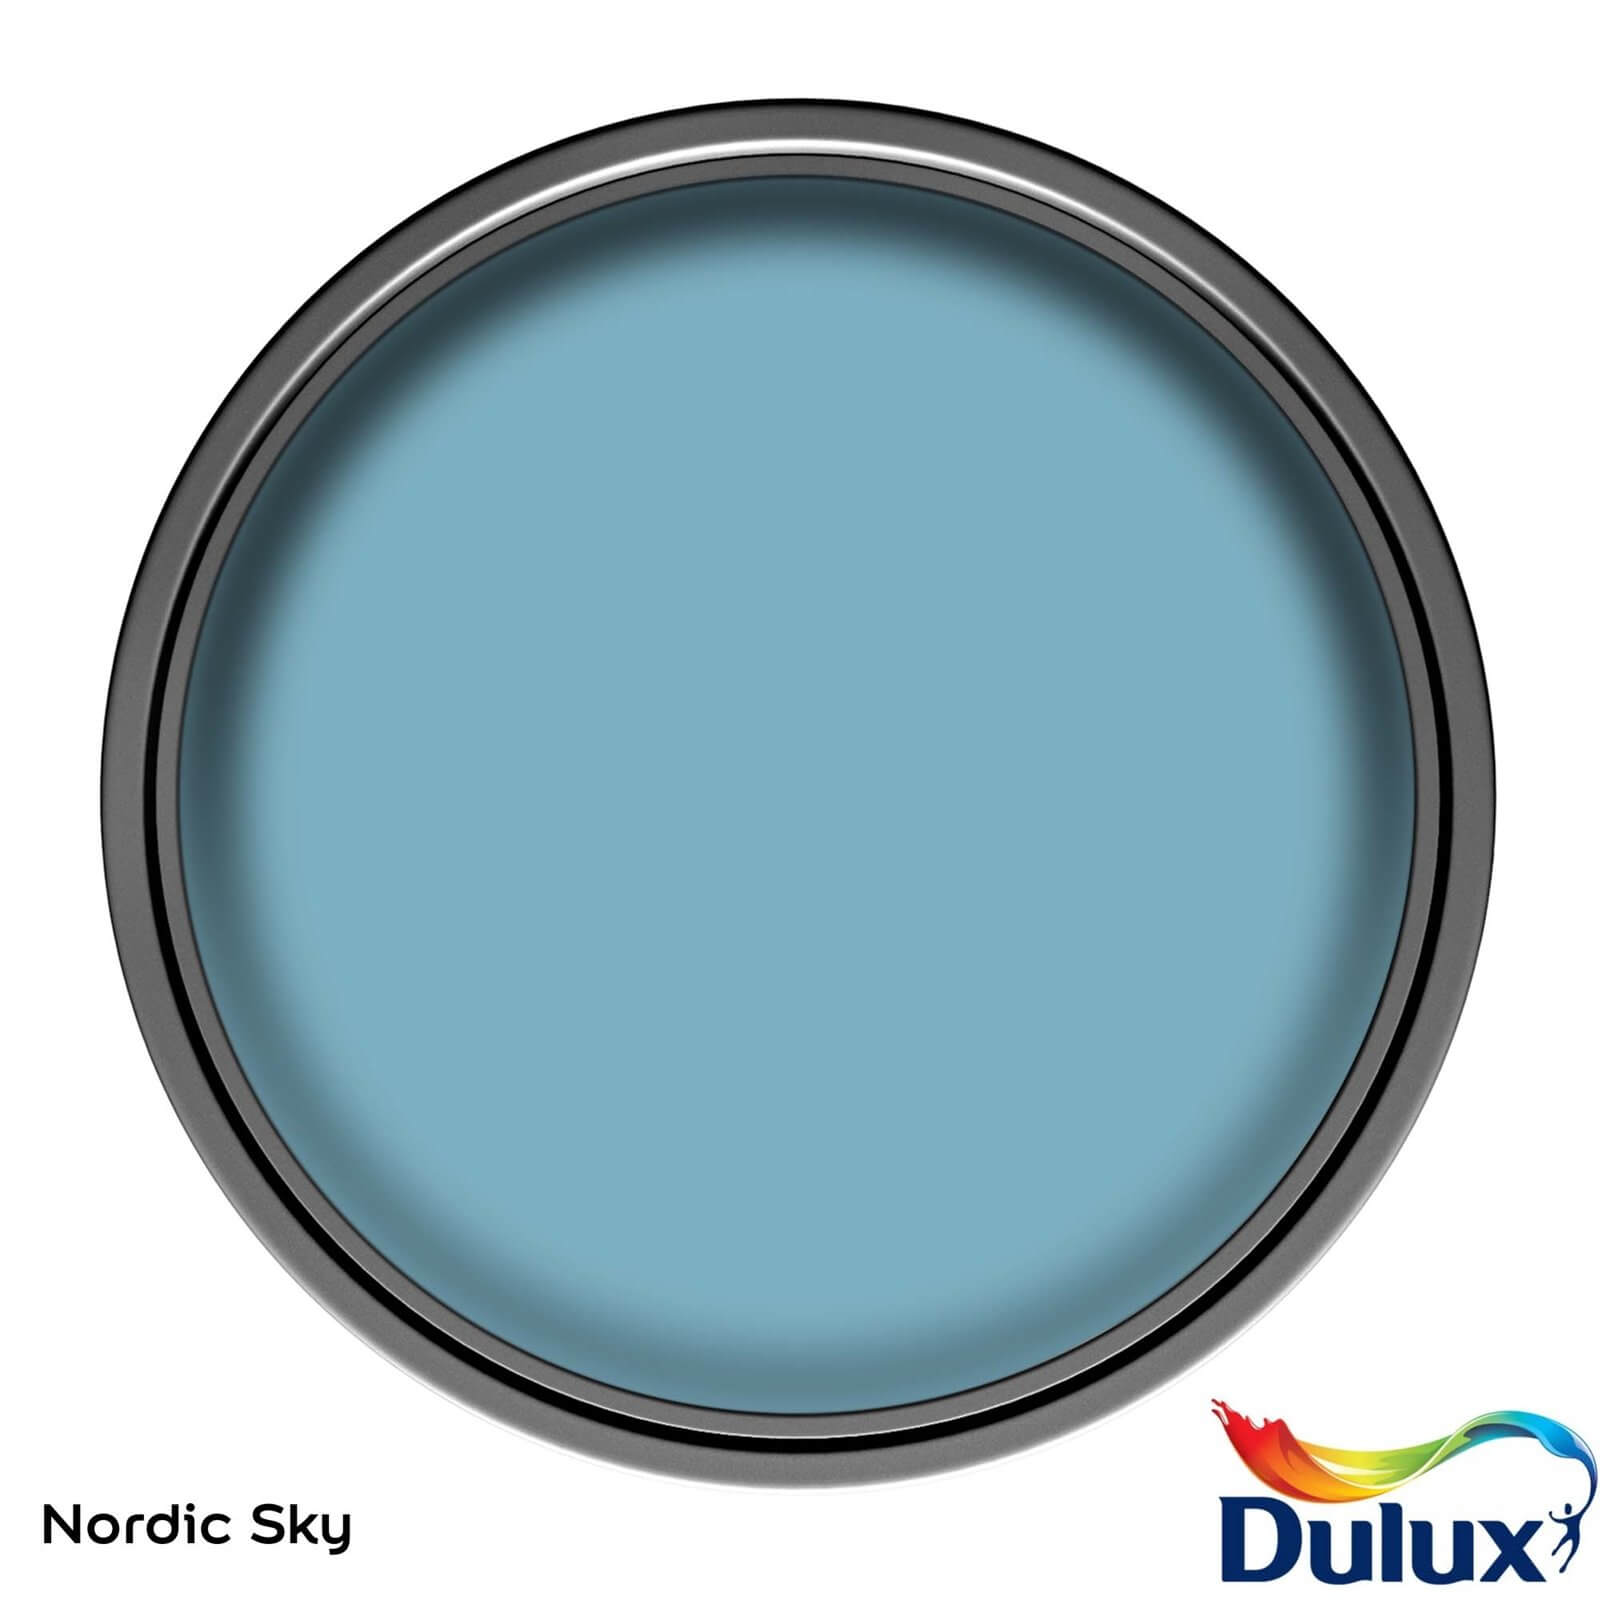 Dulux Easycare Washable & Tough Nordic Sky - Matt - 2.5L